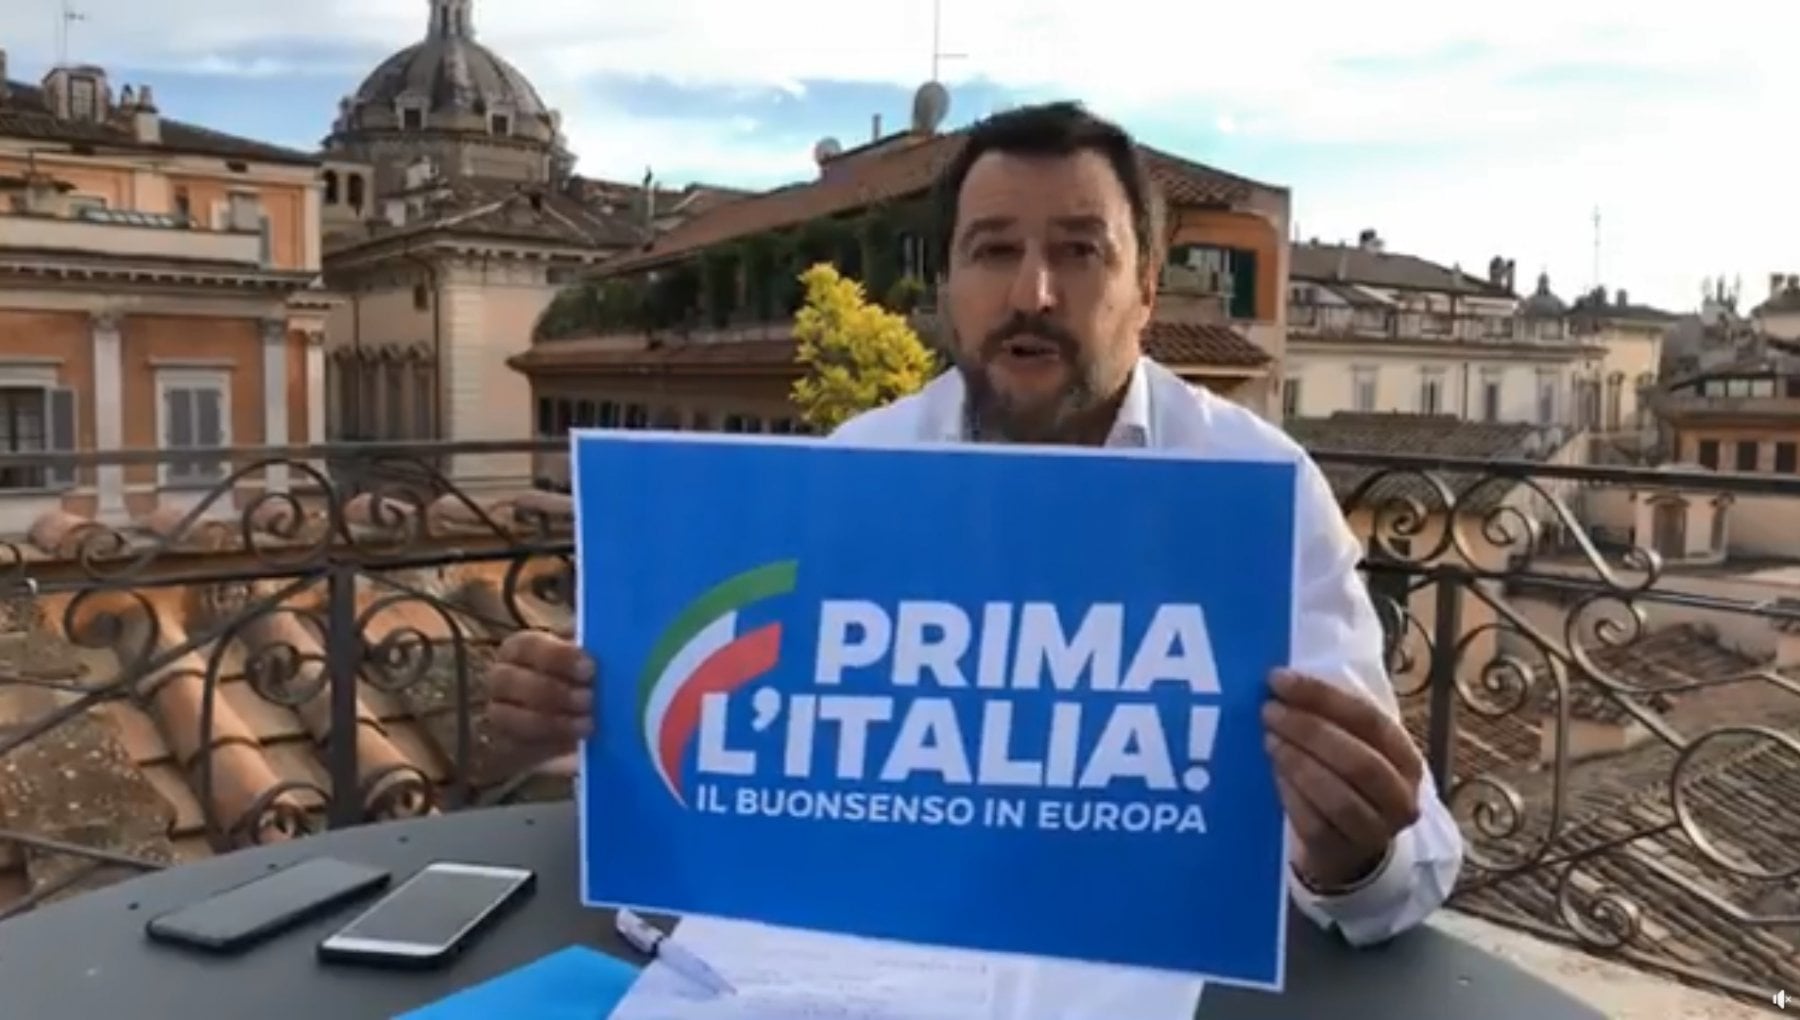 Salvini e il trasformismo: anche a Palermo il gruppo della Lega cambia nome e diventa "Prima l'Italia"